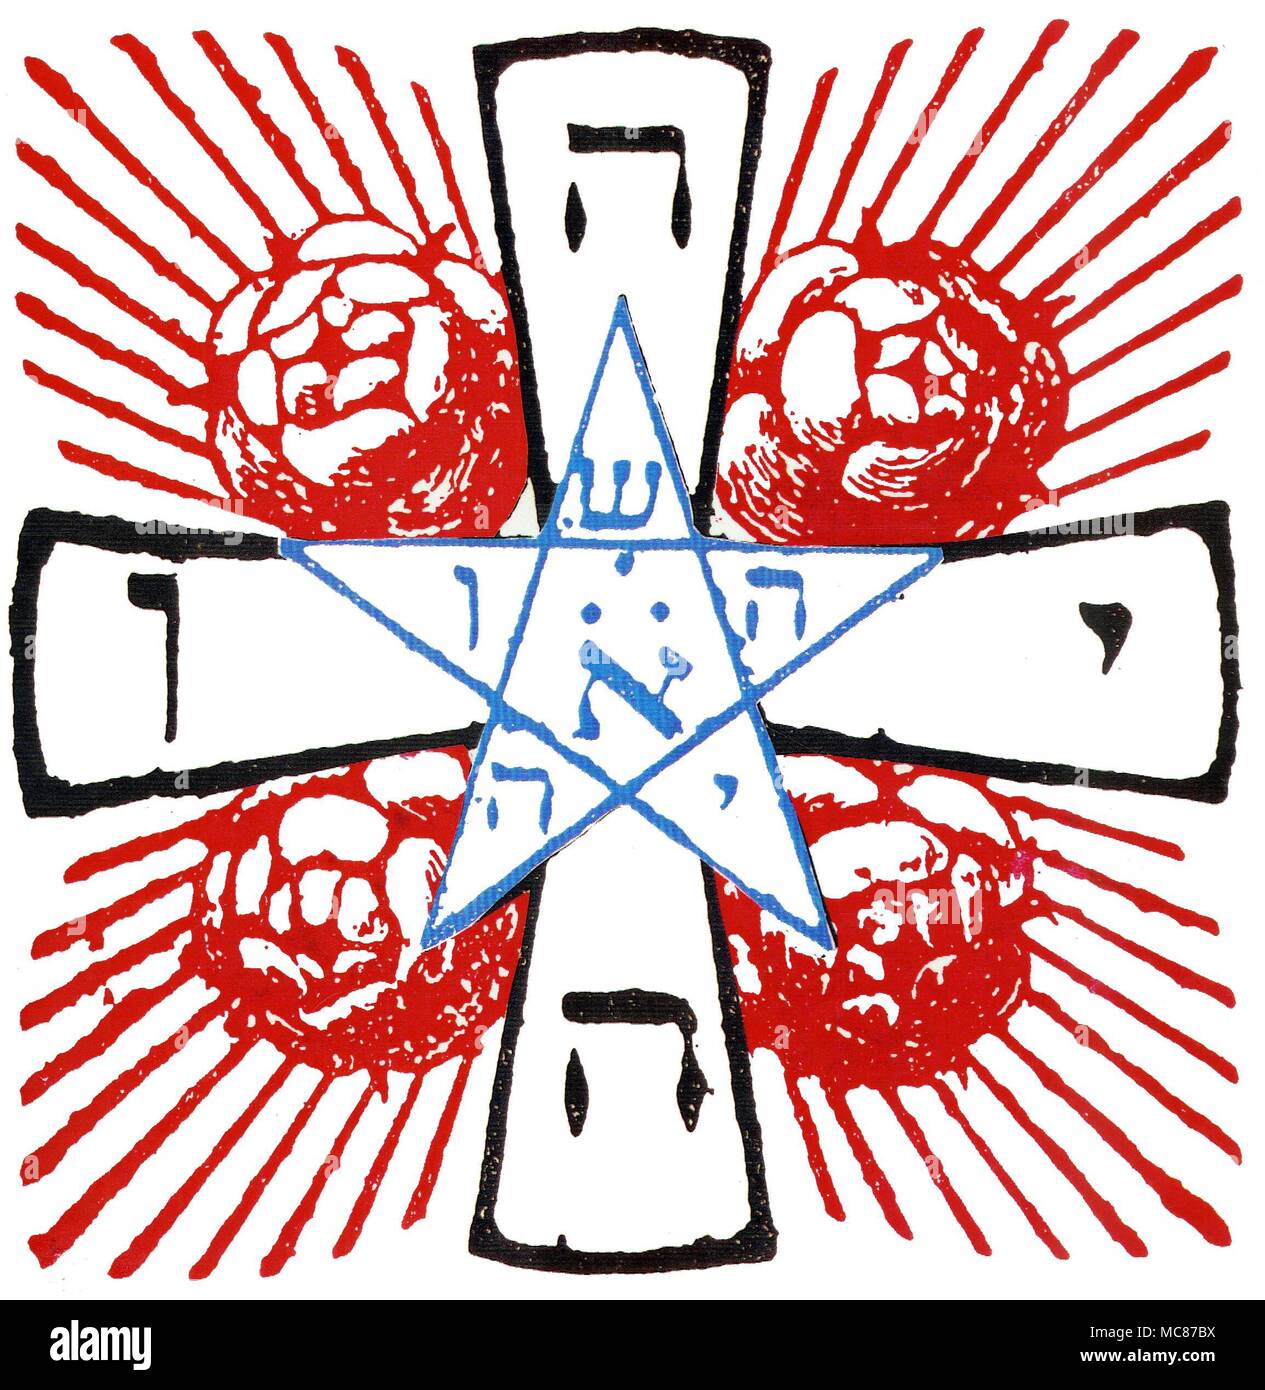 Simboli - ROSICRUCIAN croce La croce dei Rosacroce progettato da Stanislas de Guaita nel 1888, e riprodotta da Oswald Wirth in Le Tarot des Imagiers du Moyen Age, 1927. Le quattro lettere del tetragrammaton, che compongono il nome ebraico di Dio, contrassegnare i bracci della croce. Le cinque lettere in triangoli del pentagramma compongono il nome Jehousha, o Gesù, il "Dio". La centrale aleph, o ebraico lettera A, è simbolico di Adamo, il primo uomo che è caduto e chi è stato redento da Cristo. La parola Rosicrucian è creduto di essere una combinazione del latino ros (il che significa che entrambe le Rose e rugiada) e Foto Stock